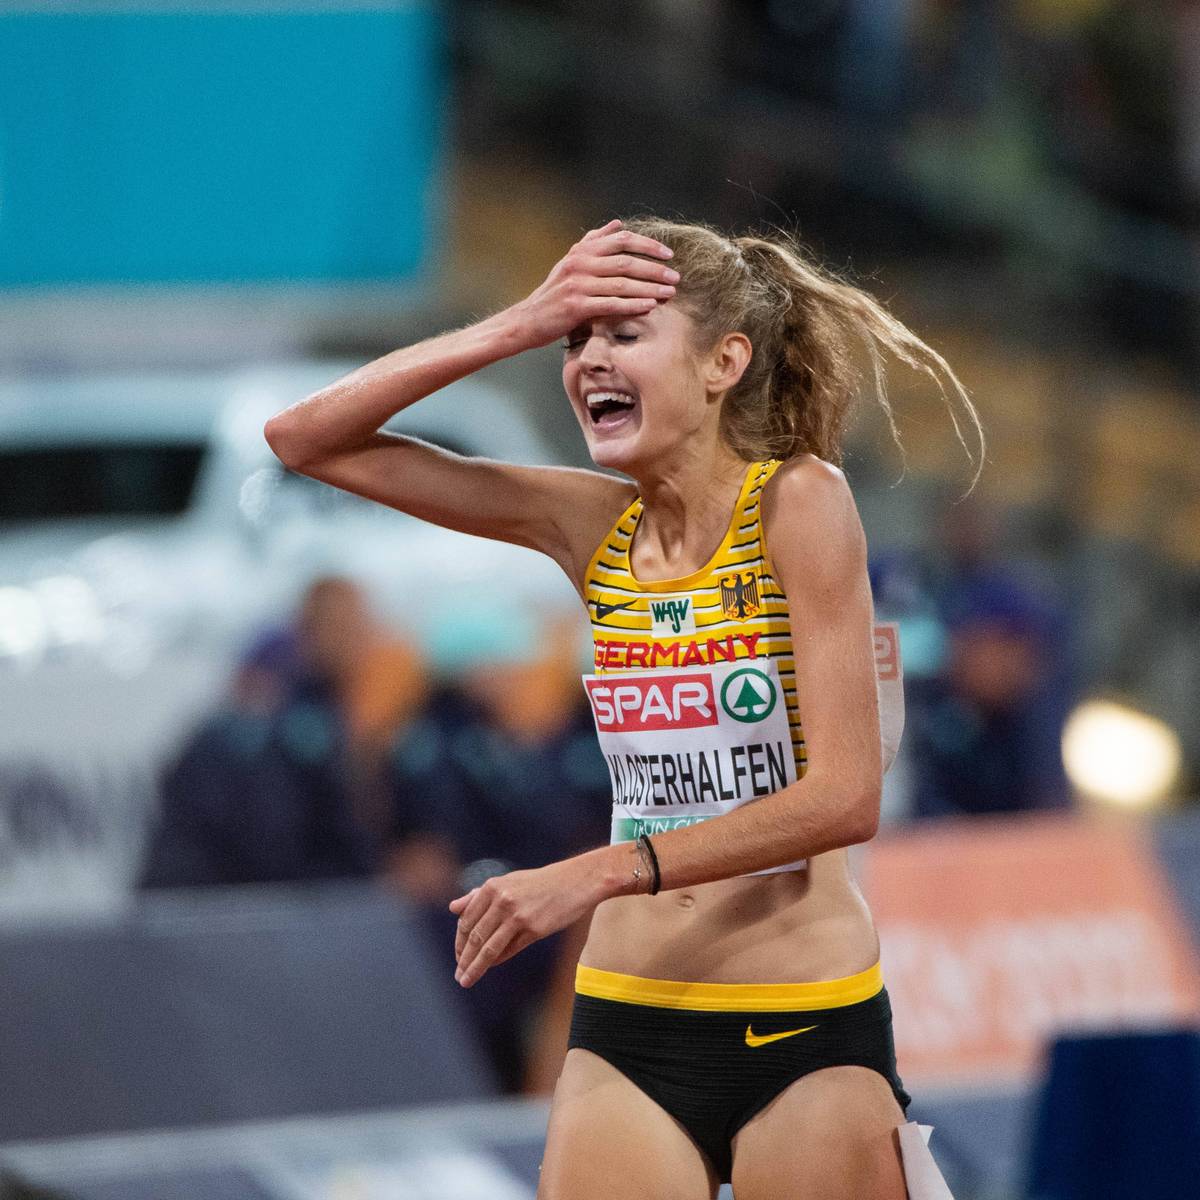 Als erste deutsche Läuferin gewinnt Konstanze Klosterhalfen EM-Gold über die 5000 m. Dabei hatte sie überlegt, ob sie überhaupt starten sollte. Ihr Trainer war dagegen. 